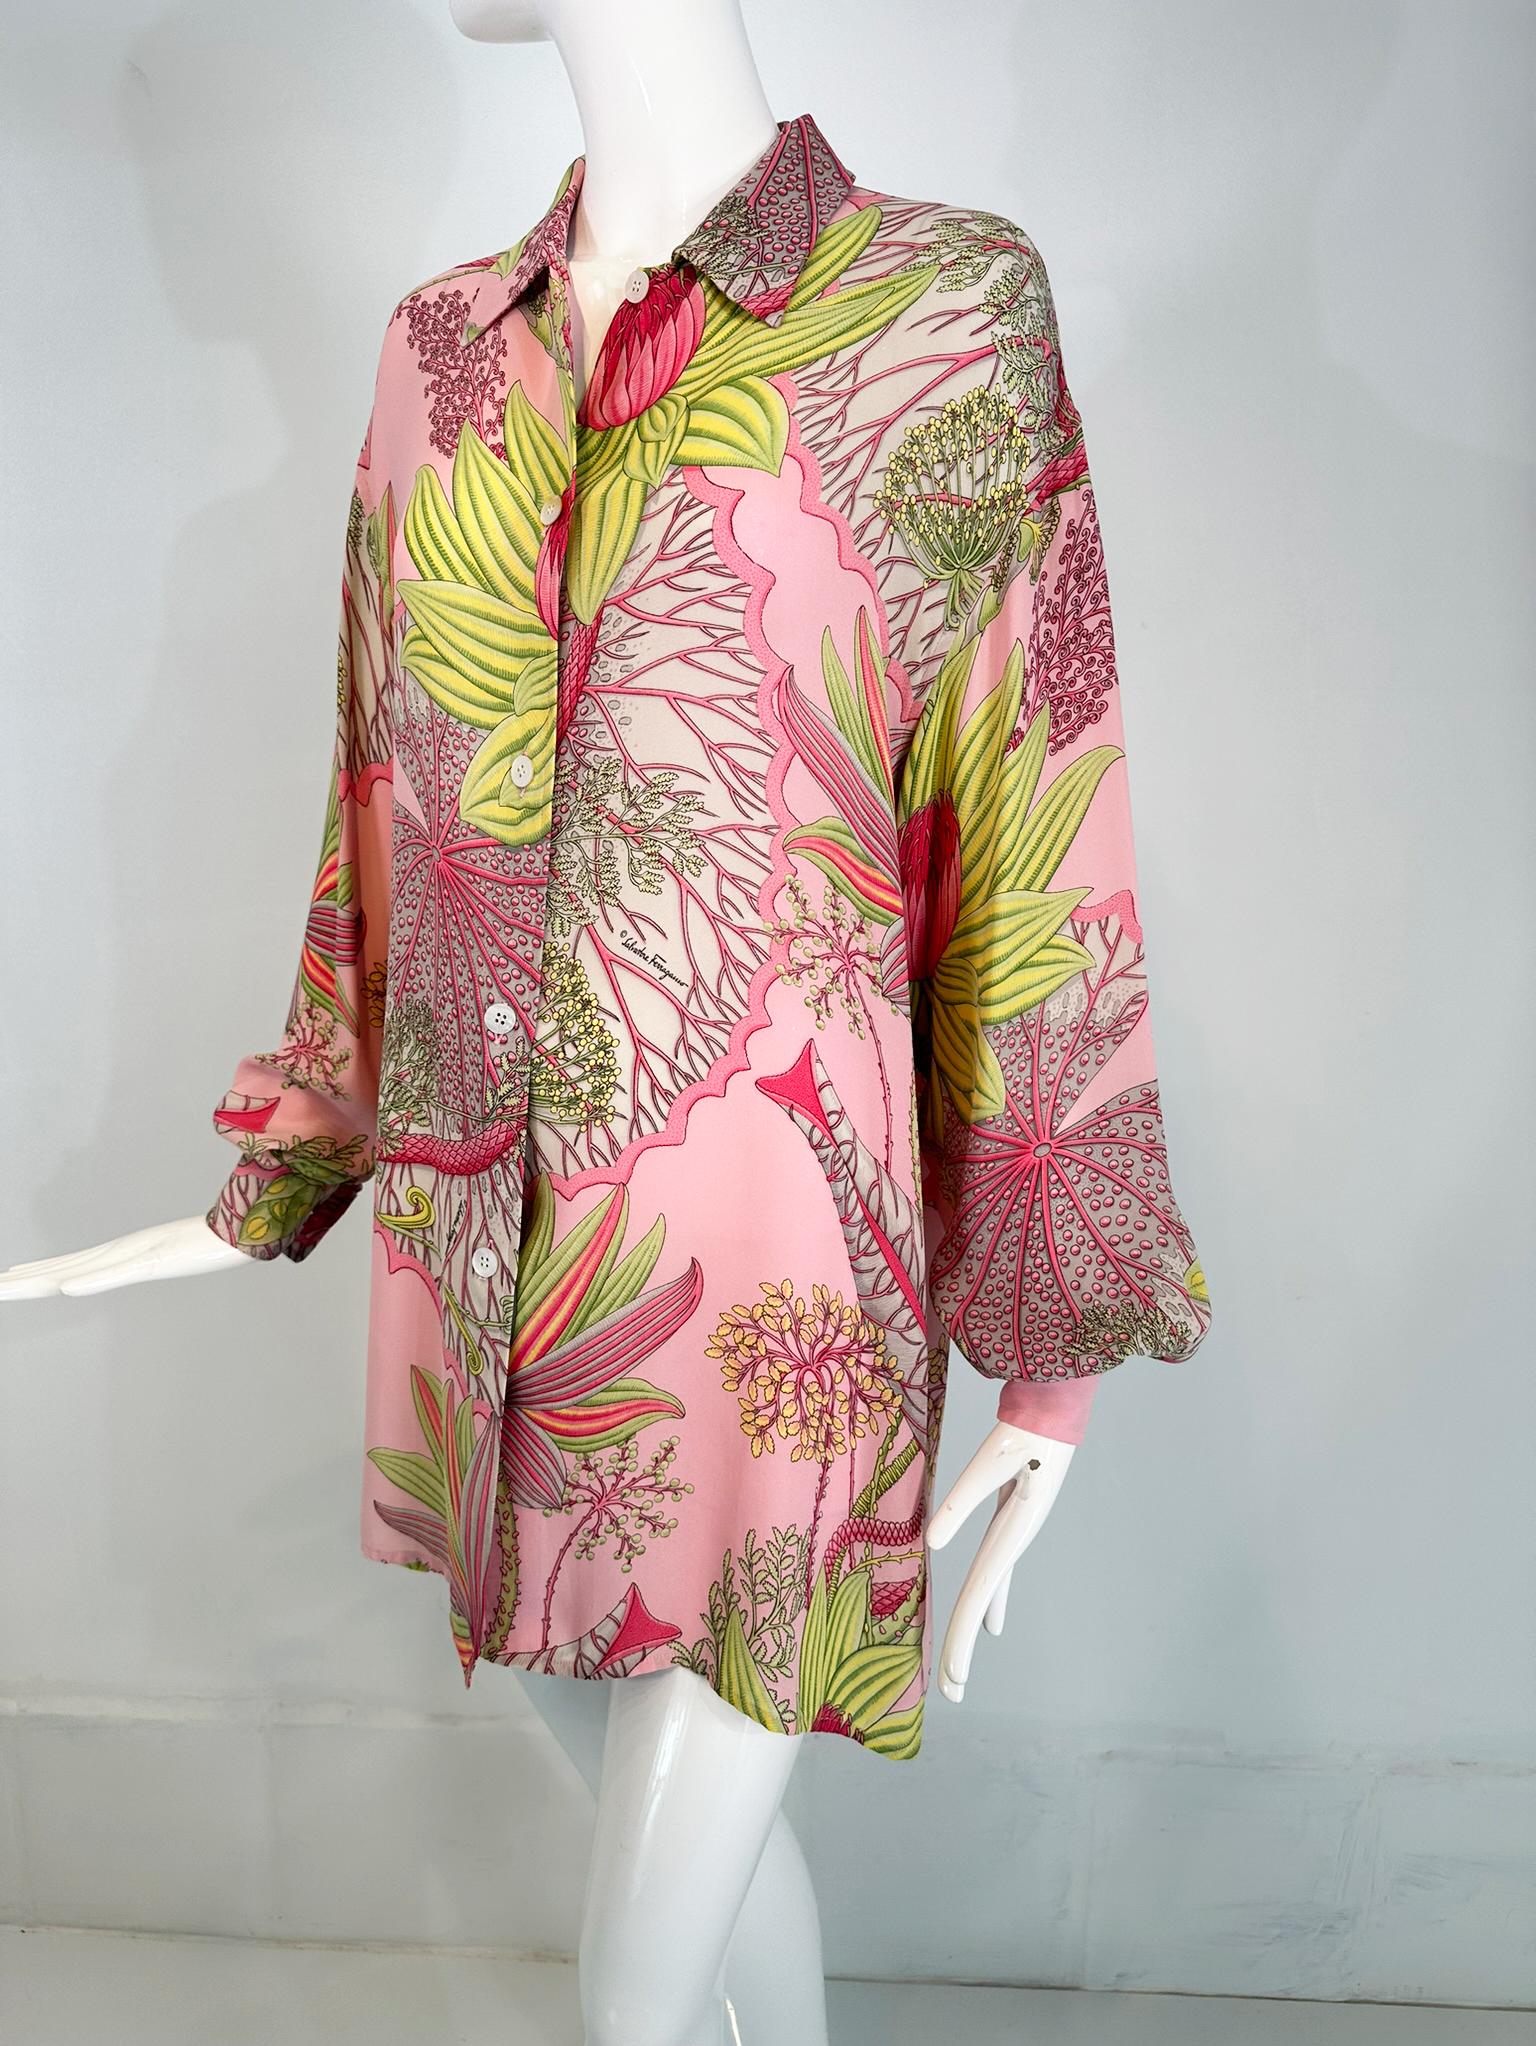 Salvatore Ferragamo 1990 - Tunique blouse oversize en crêpe de soie au feuillage tropical. Ce magnifique chemisier est réalisé sur un fond rose avec un assortiment de feuillages tropicaux. Chemisier à manches longues avec poignets boutonnés. Petit